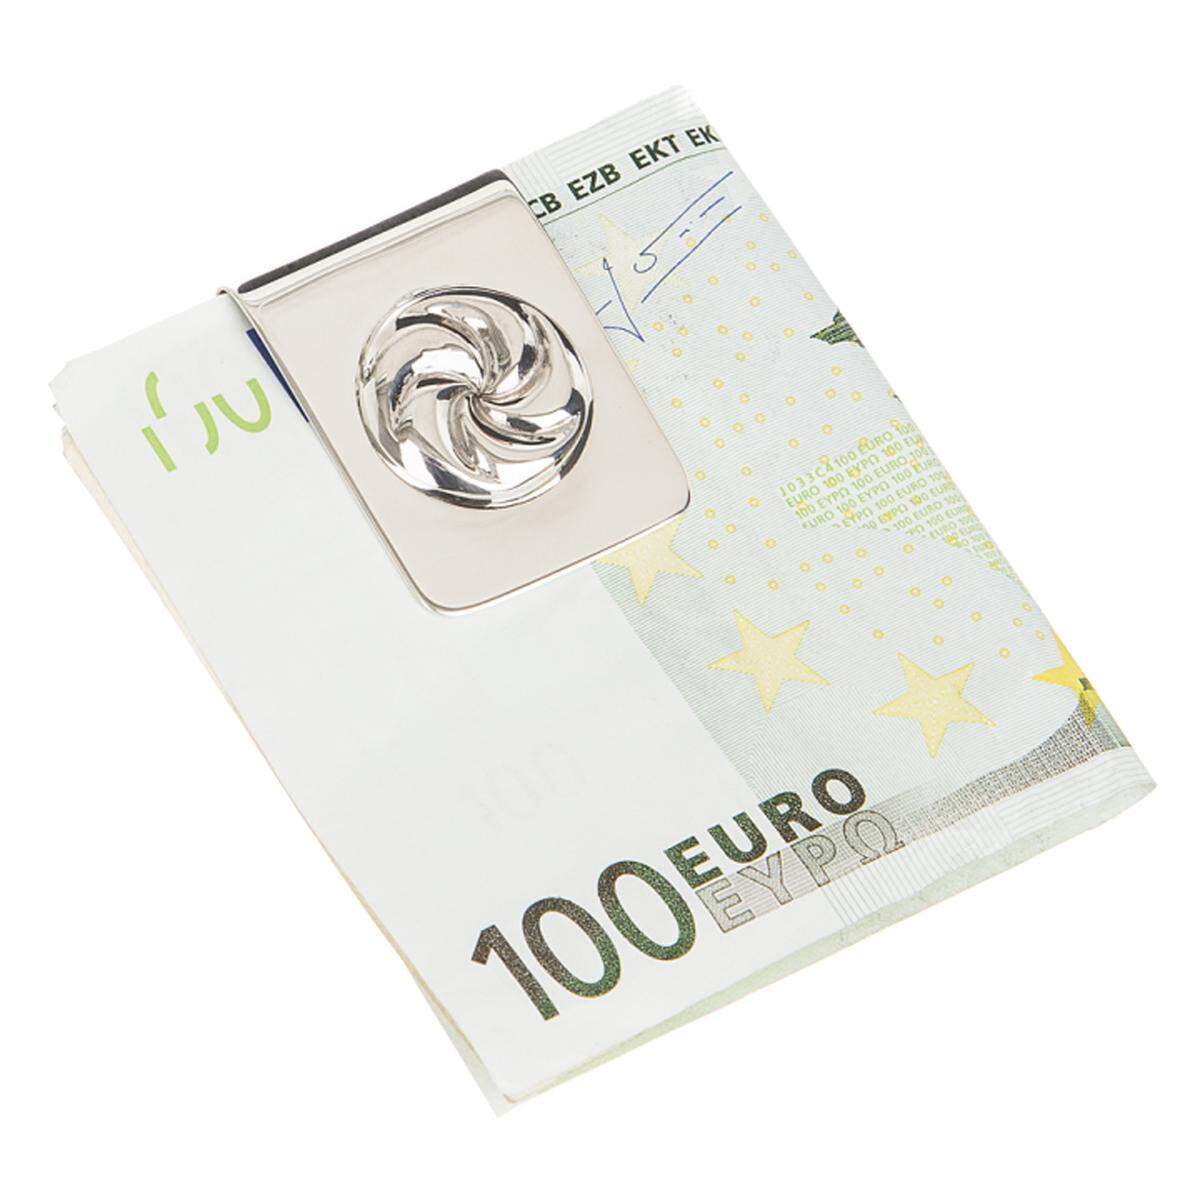 Jausengeld schön verpackt: Die Geldklammer mit Semmelprägung aus 925er-Silber ist ein "geschmackvolles" Geschenk mit Augenzwinkern. 189 Euro im Presse Onlineshop.